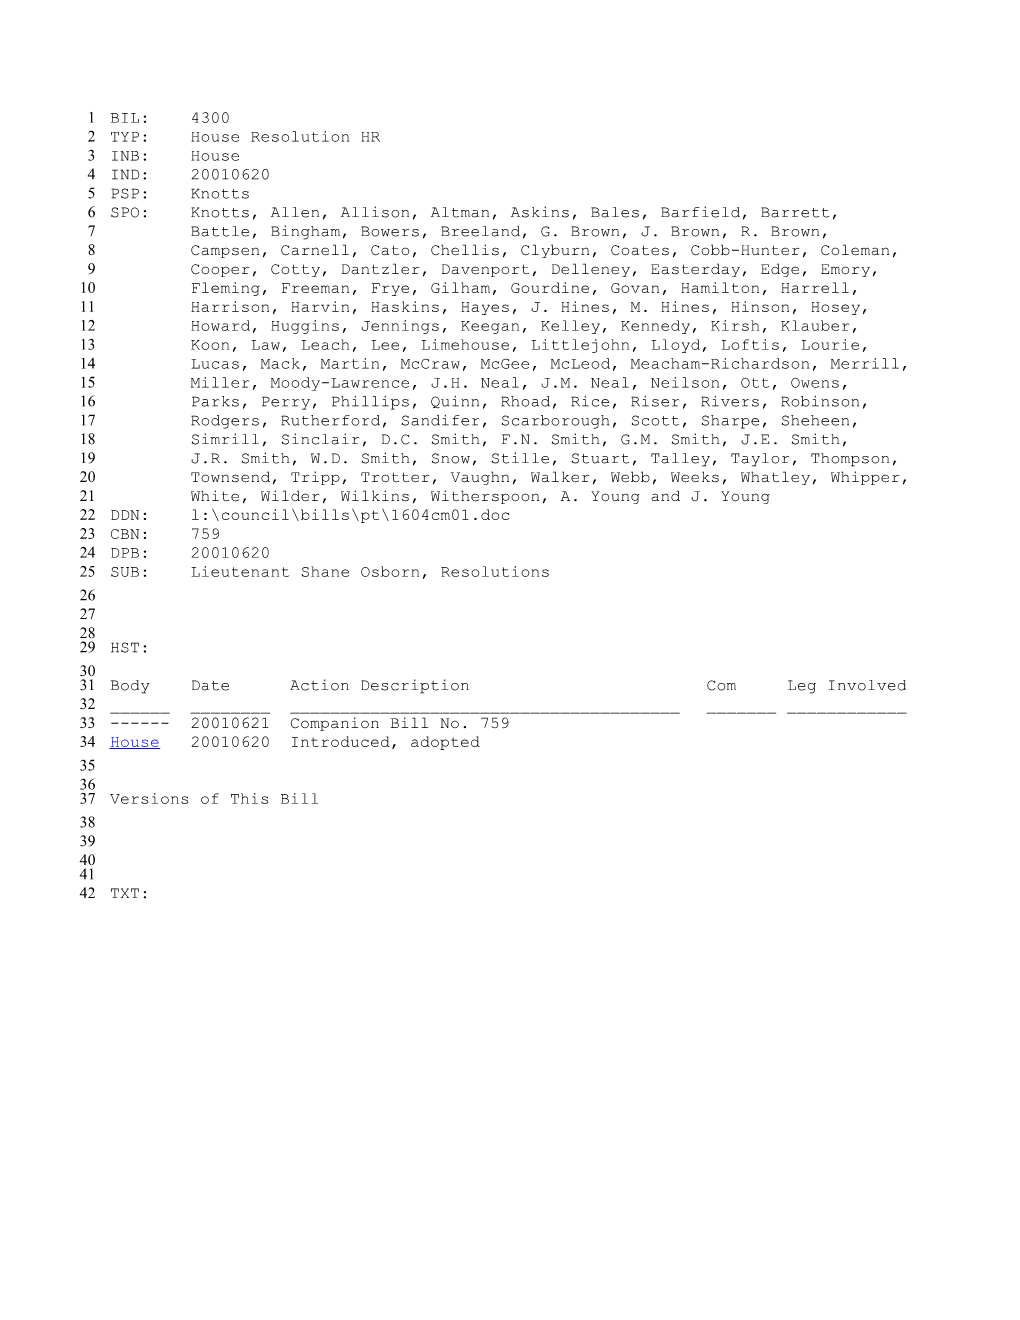 2001-2002 Bill 4300: Lieutenant Shane Osborn, Resolutions - South Carolina Legislature Online